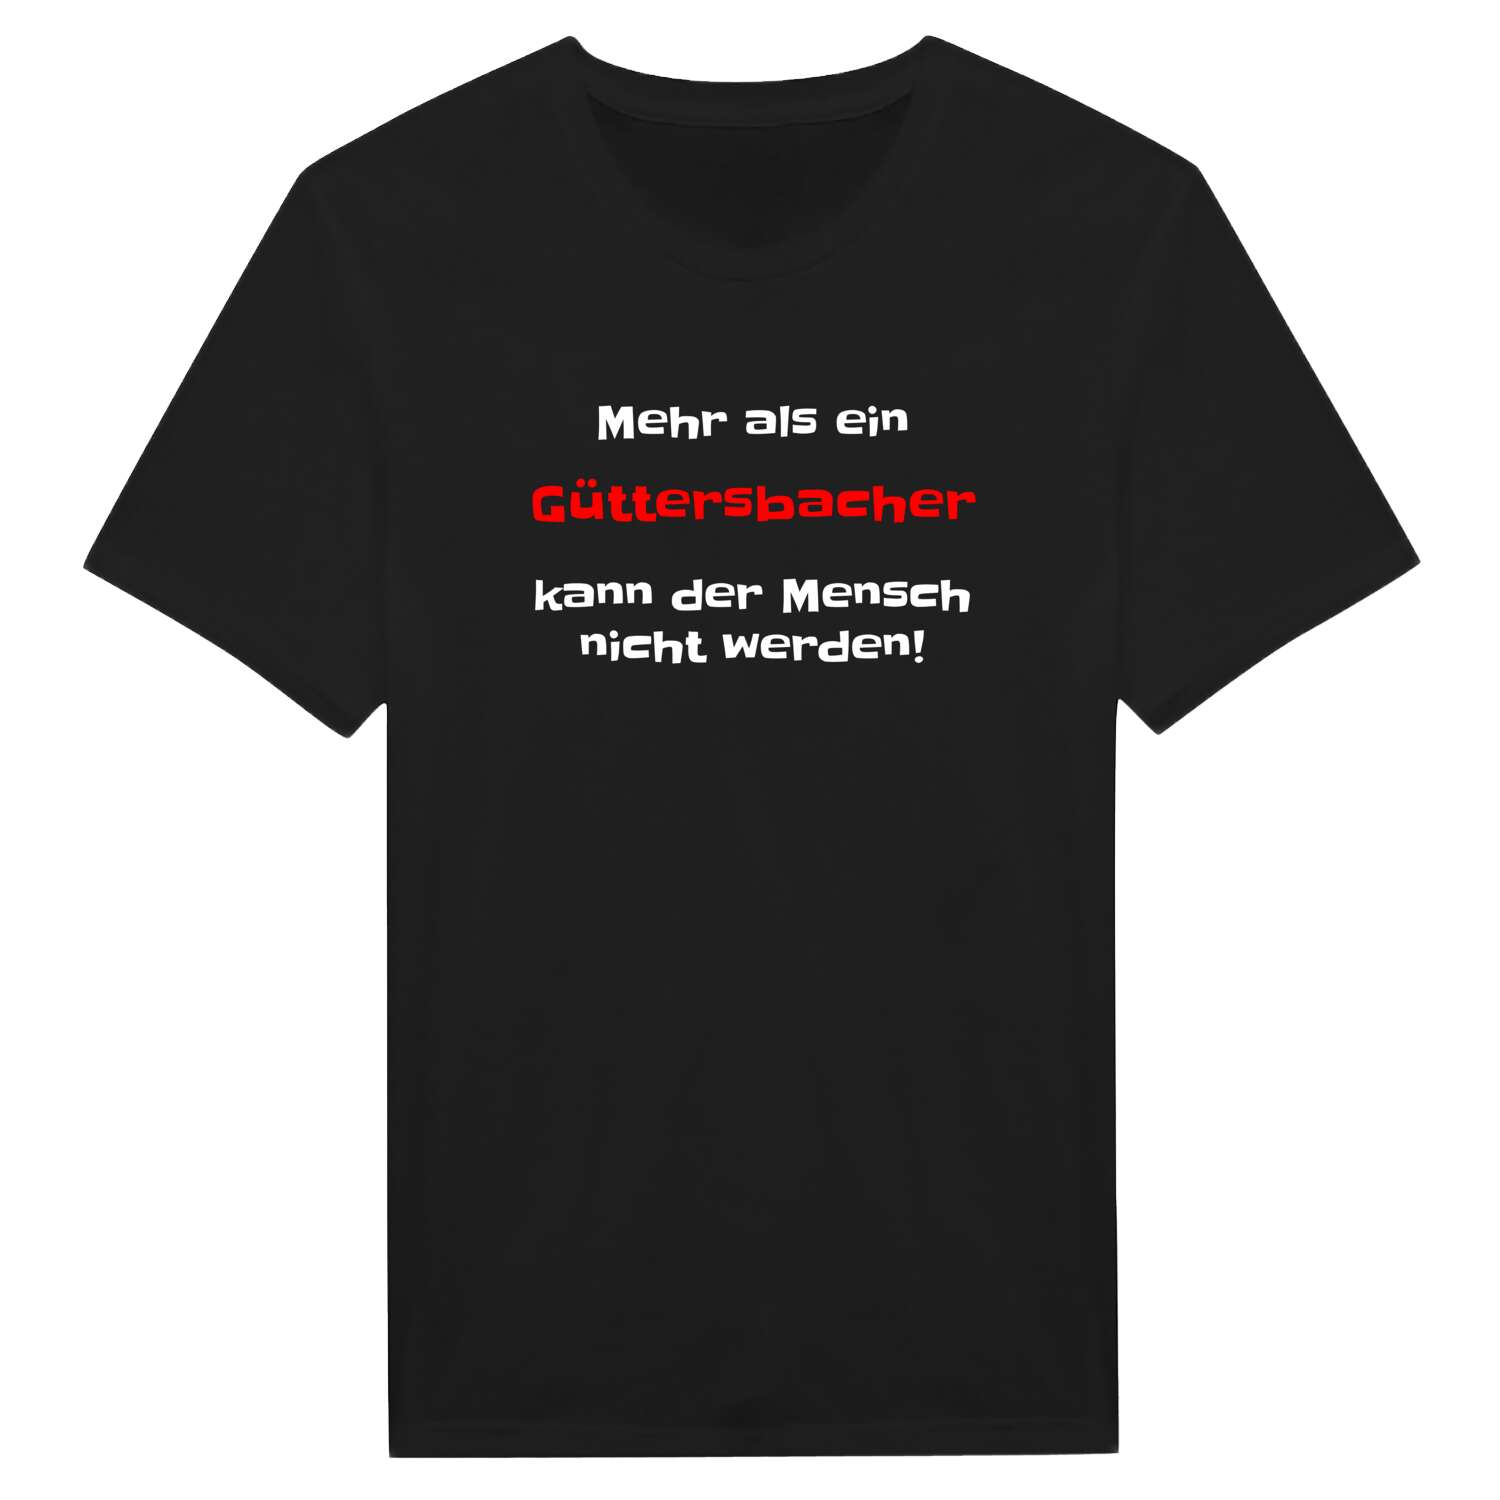 Güttersbach T-Shirt »Mehr als ein«